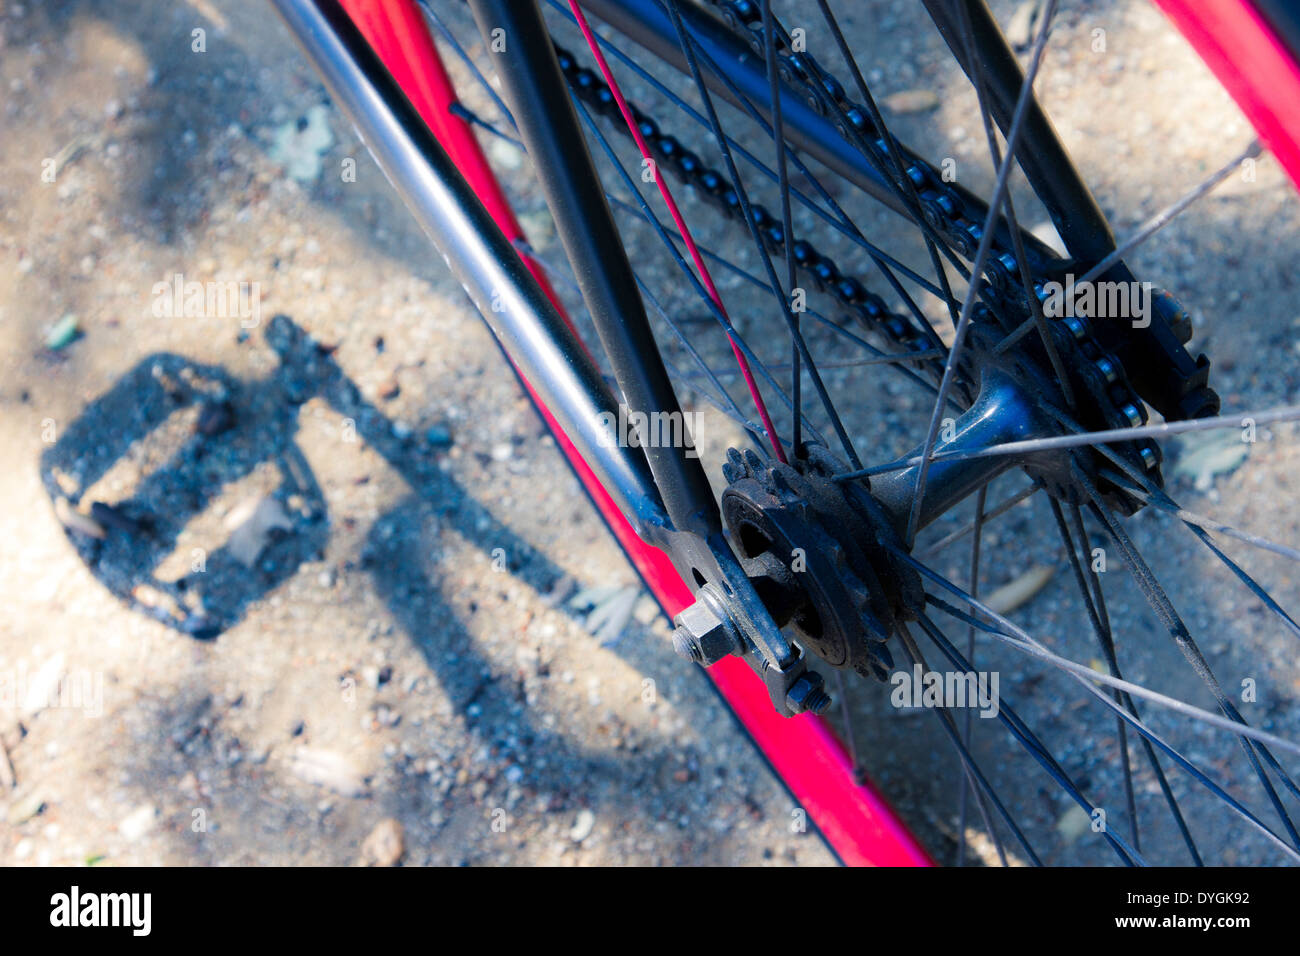 Schatten des Fahrrad Pedal am Boden neben hellen roten Fahrrad-Rad und Speichen Stockfoto